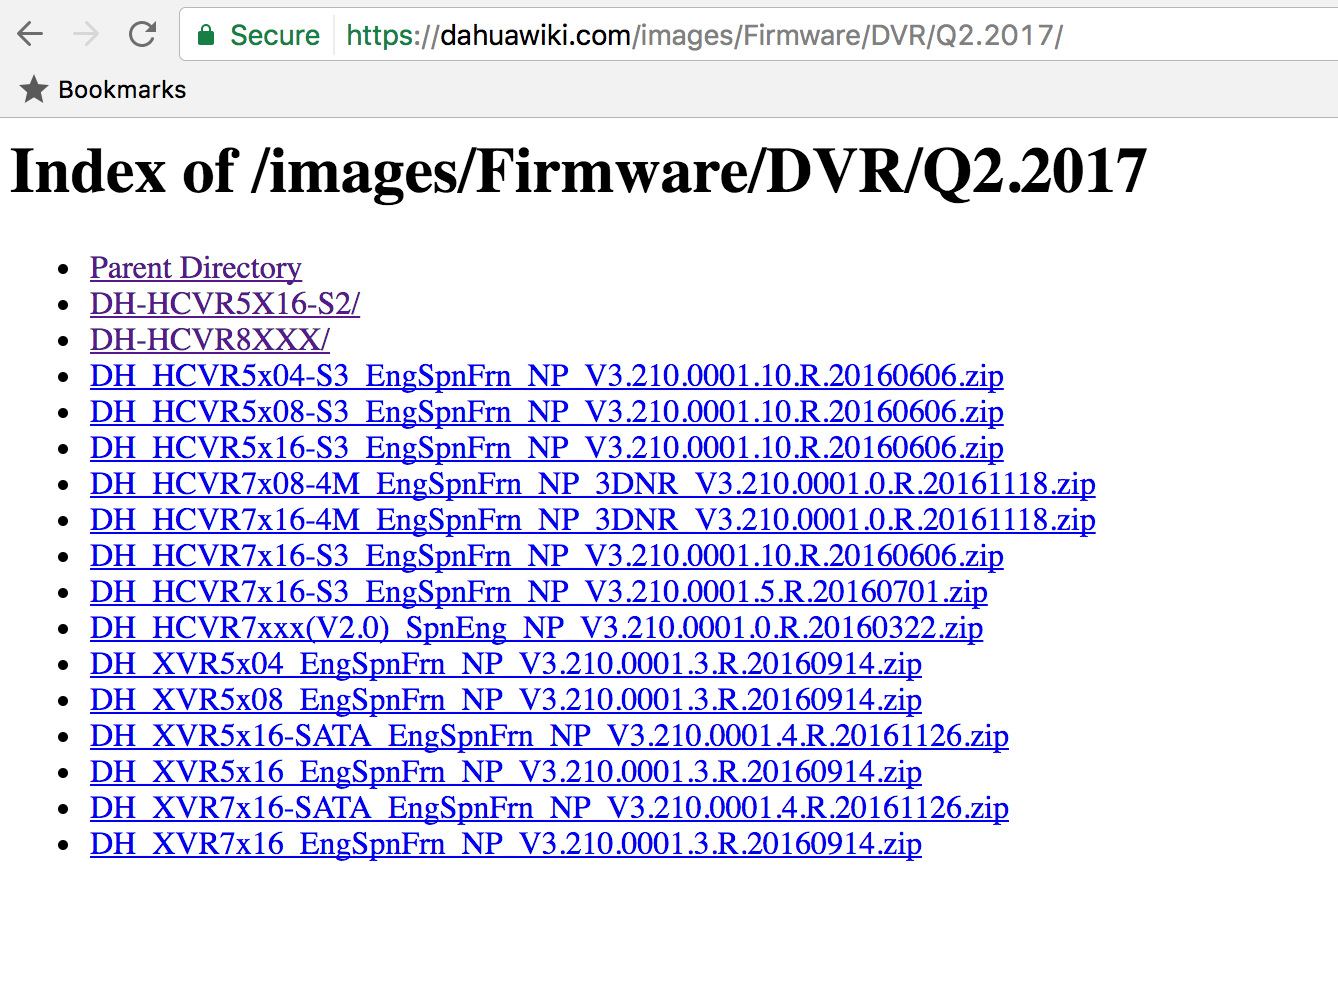 Dahua Wiki Firmware listing.png